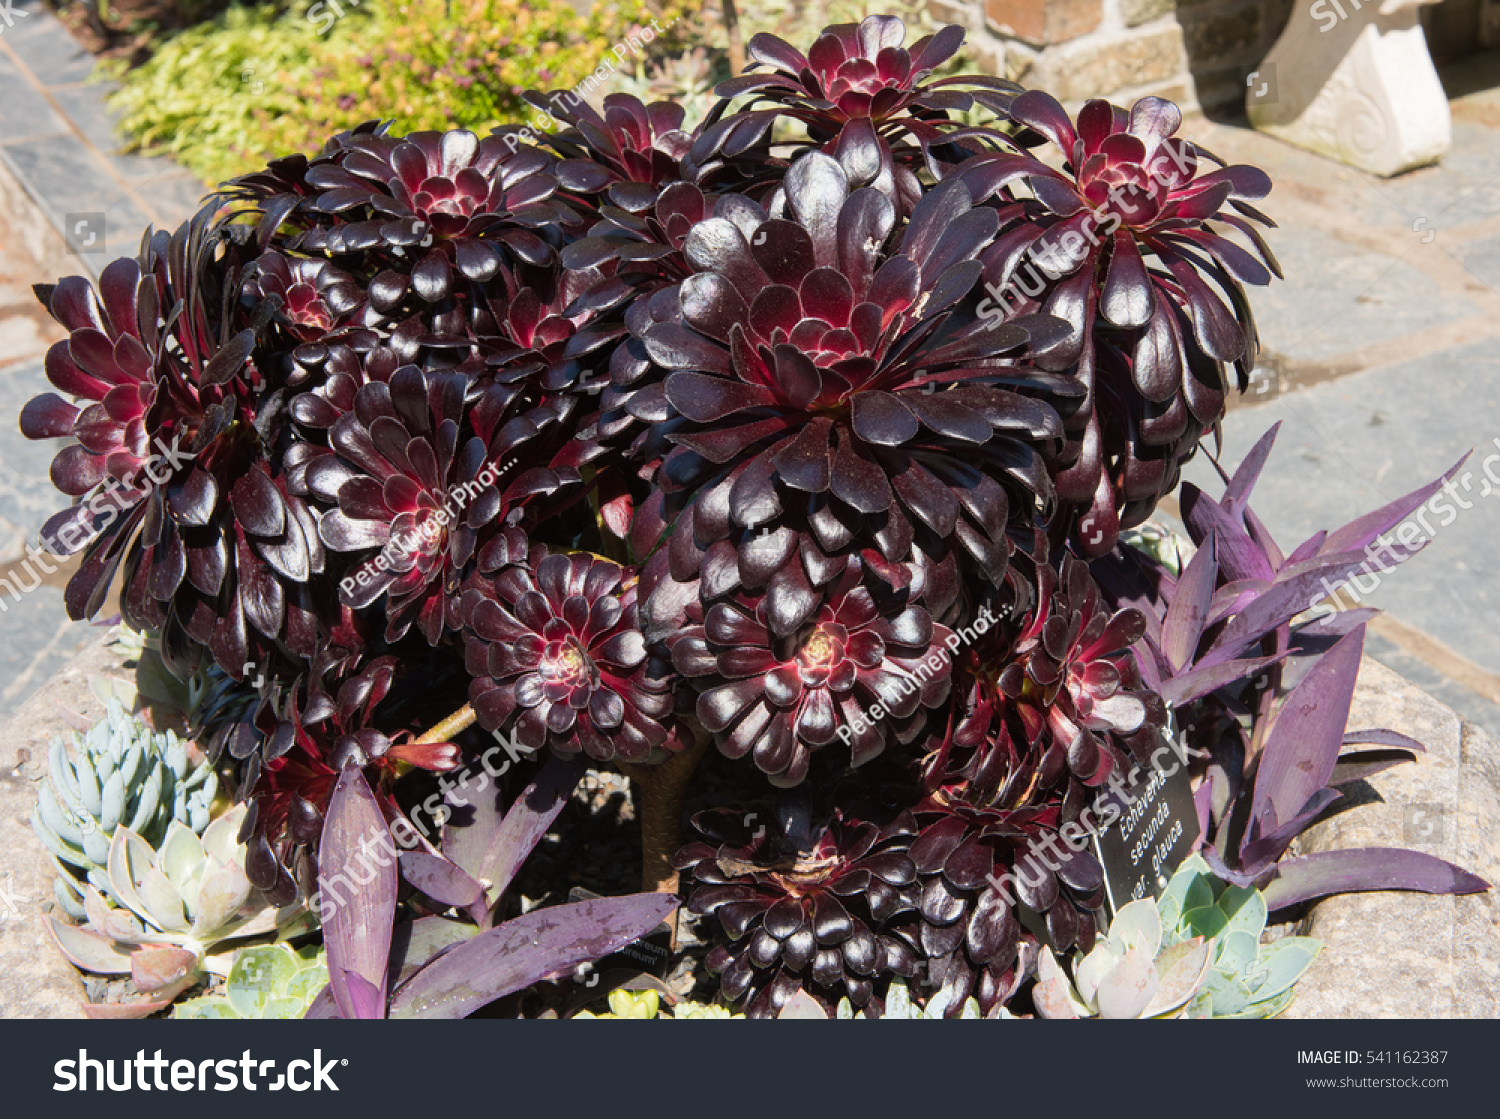 Aeonium Arboreum Atropurpureum Dark Purple Houseleek Stock Photo Edit Now 541162387